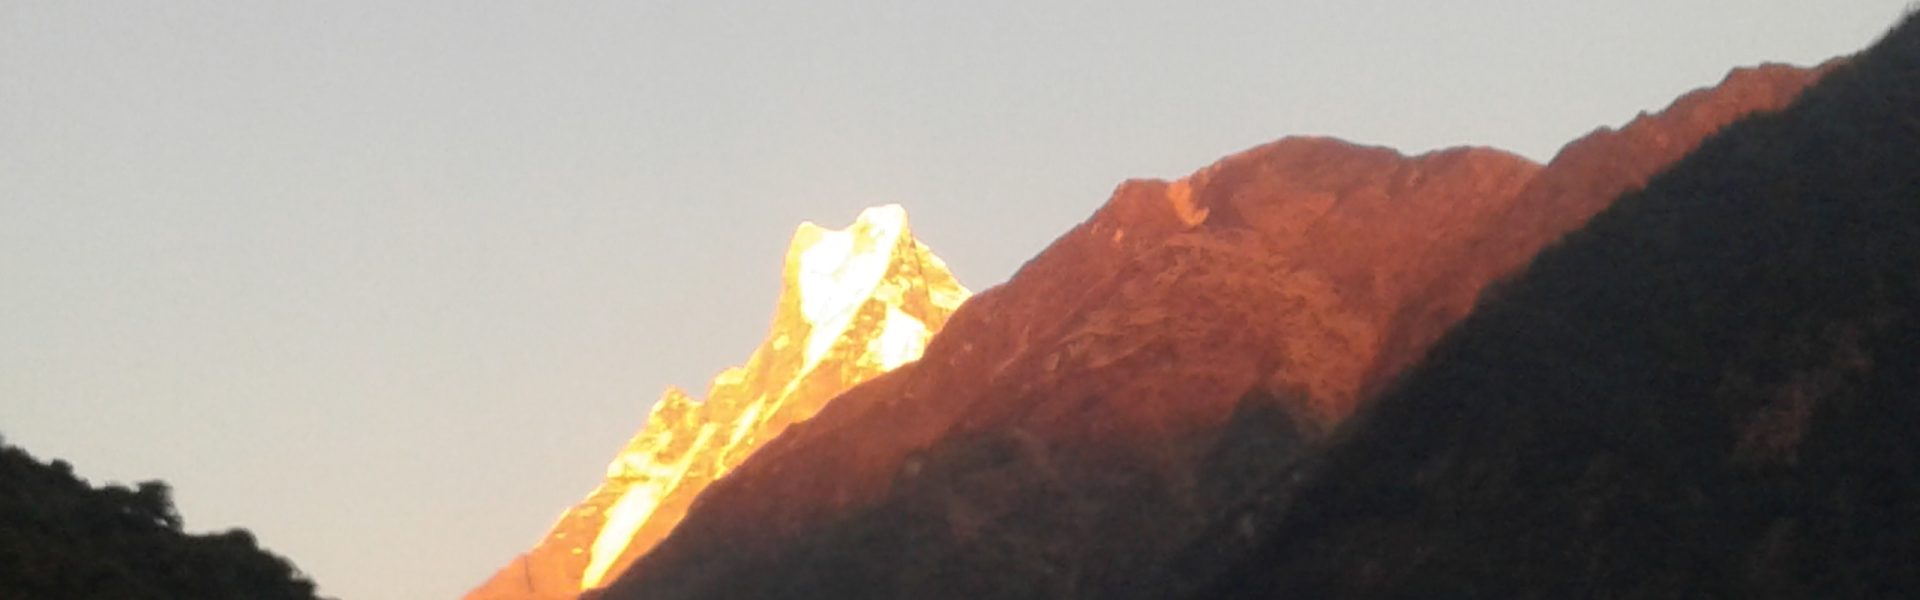 Kathmandu Pokhara Sunrise Tour